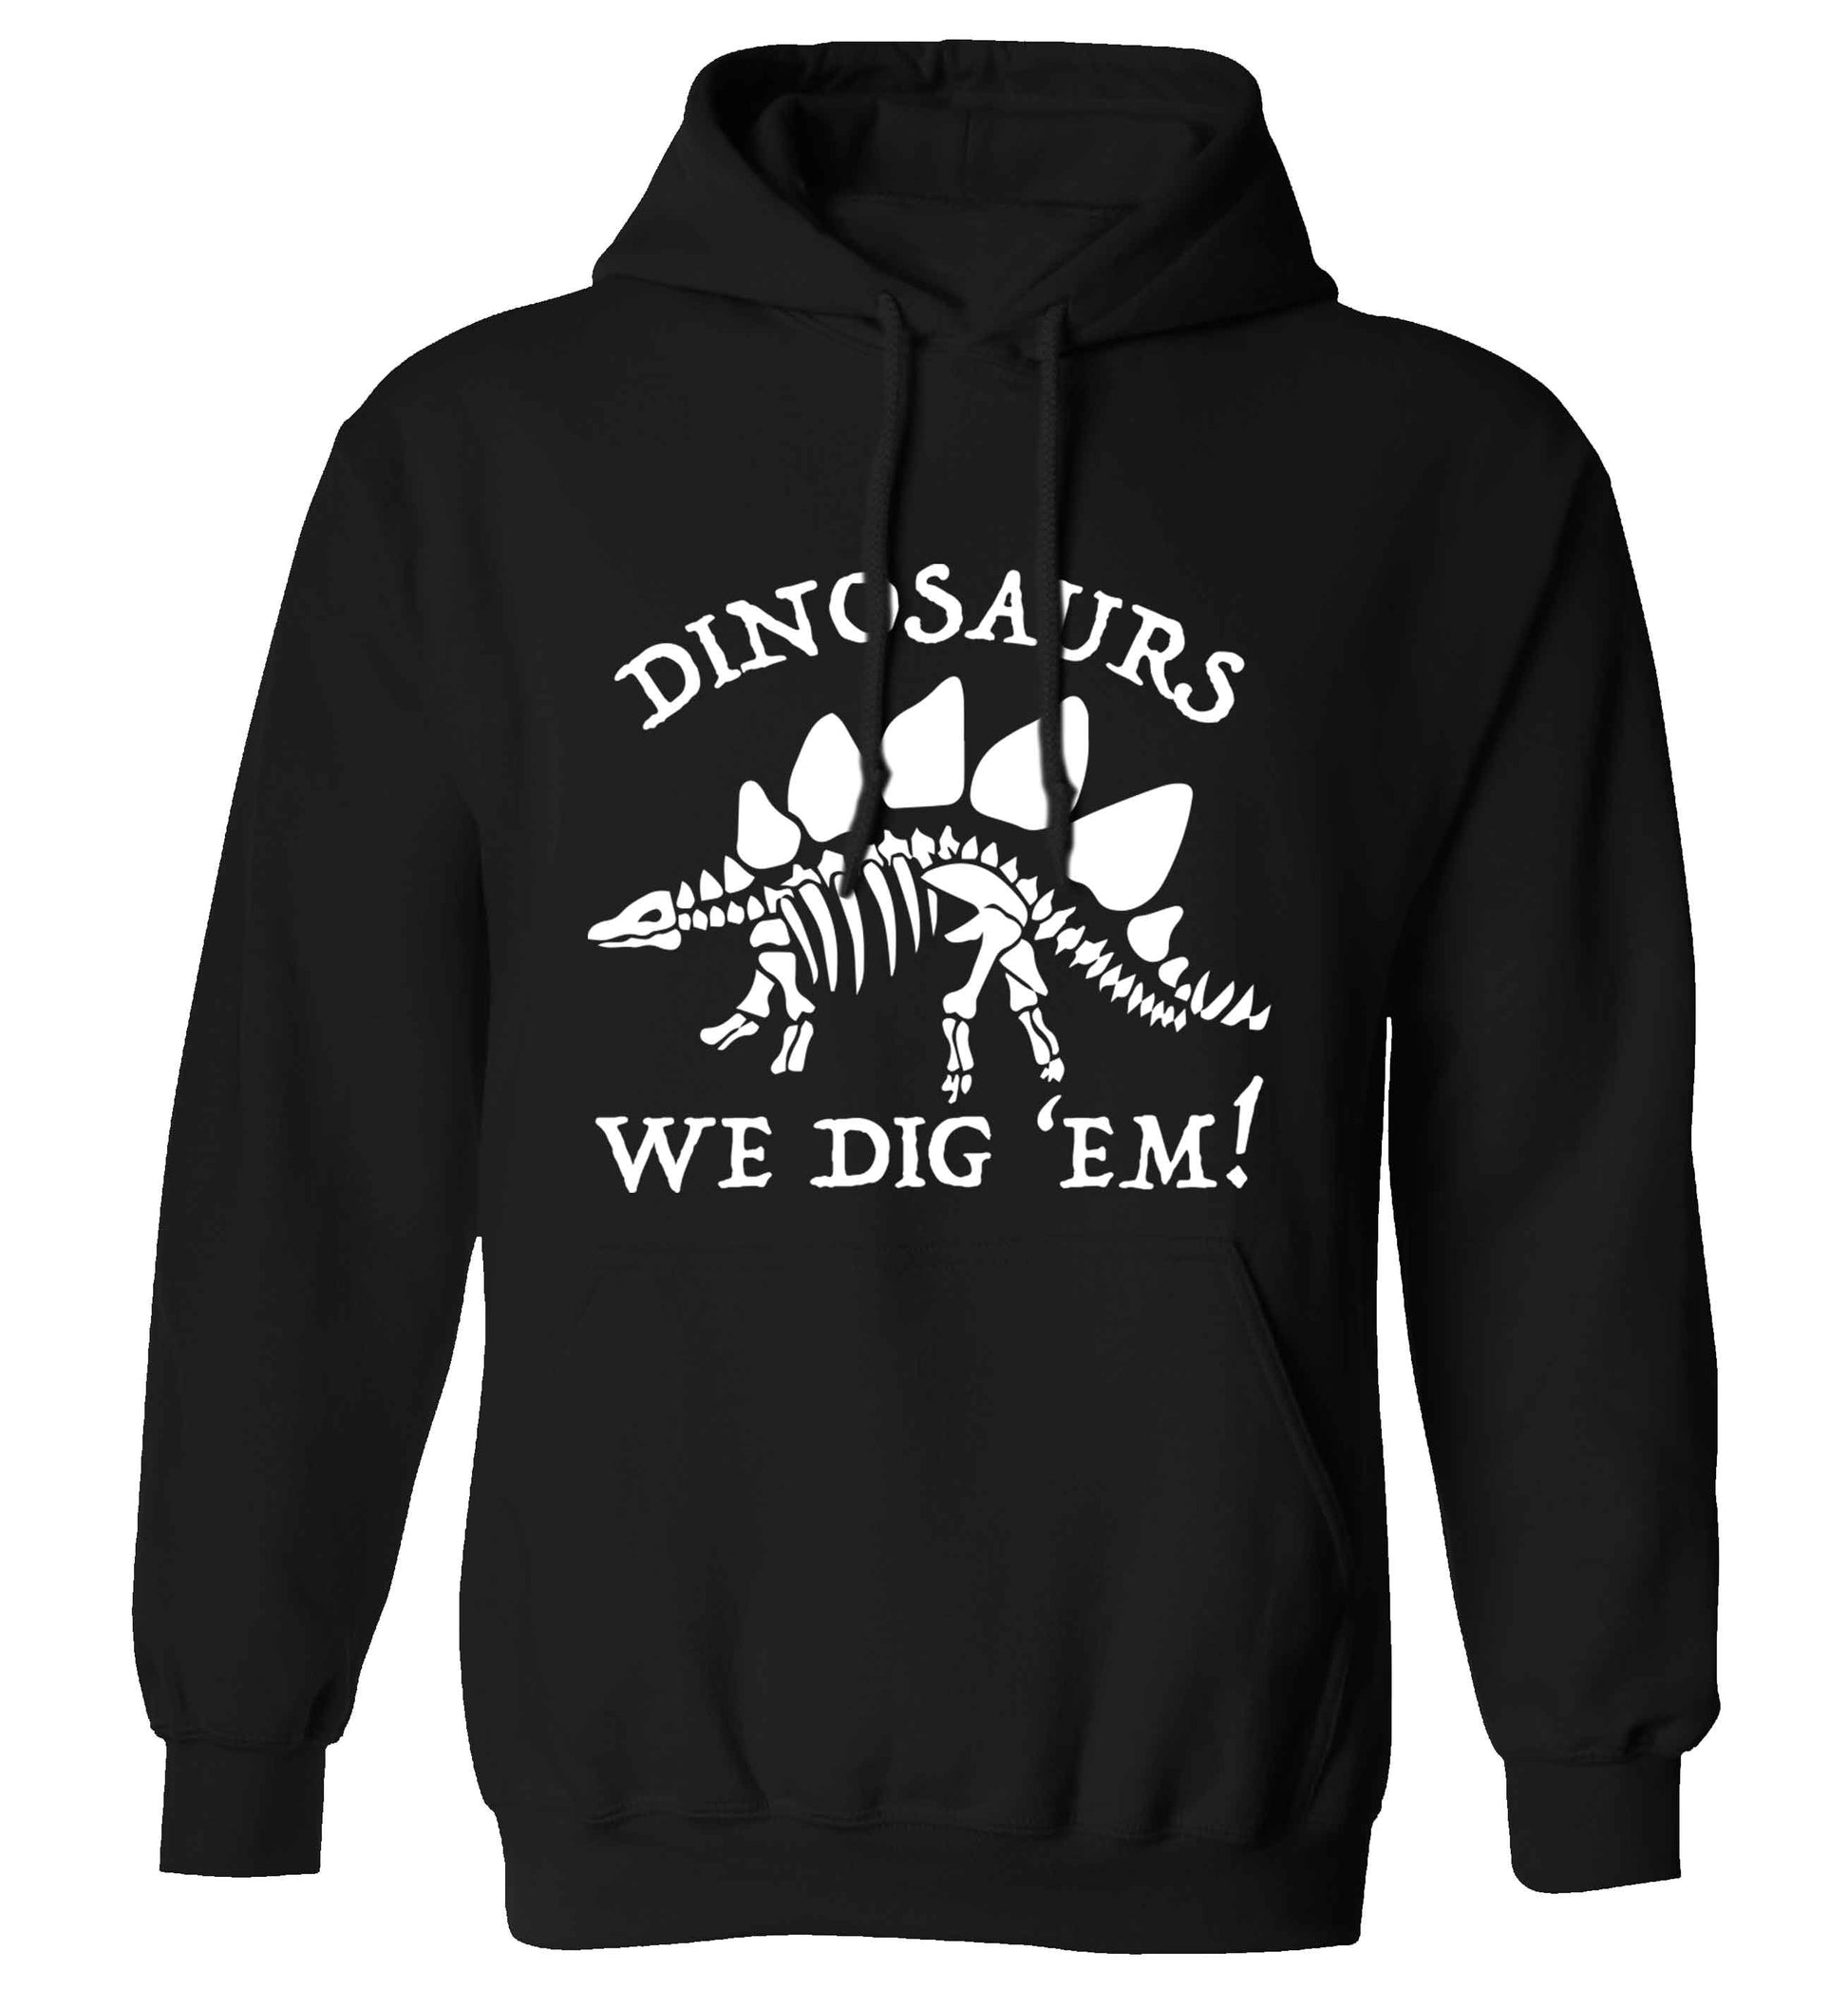 Dinosaurs we dig 'em! adults unisex black hoodie 2XL